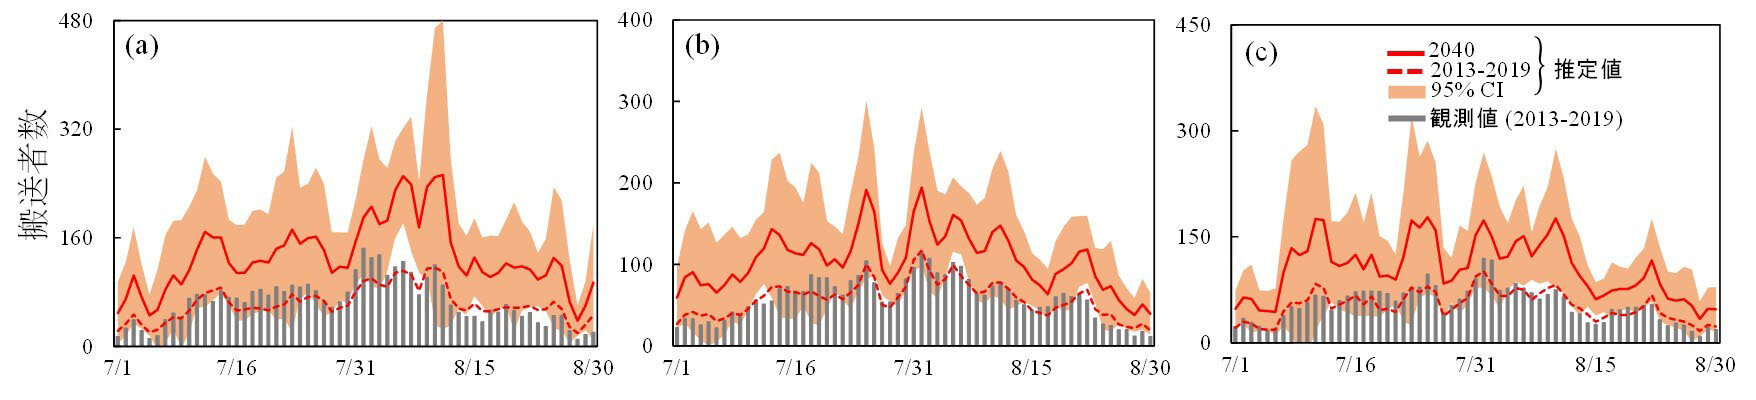 将来の気象データを用いた熱中症搬送者数推定値。(a)東京、(b)大阪、(c)愛知